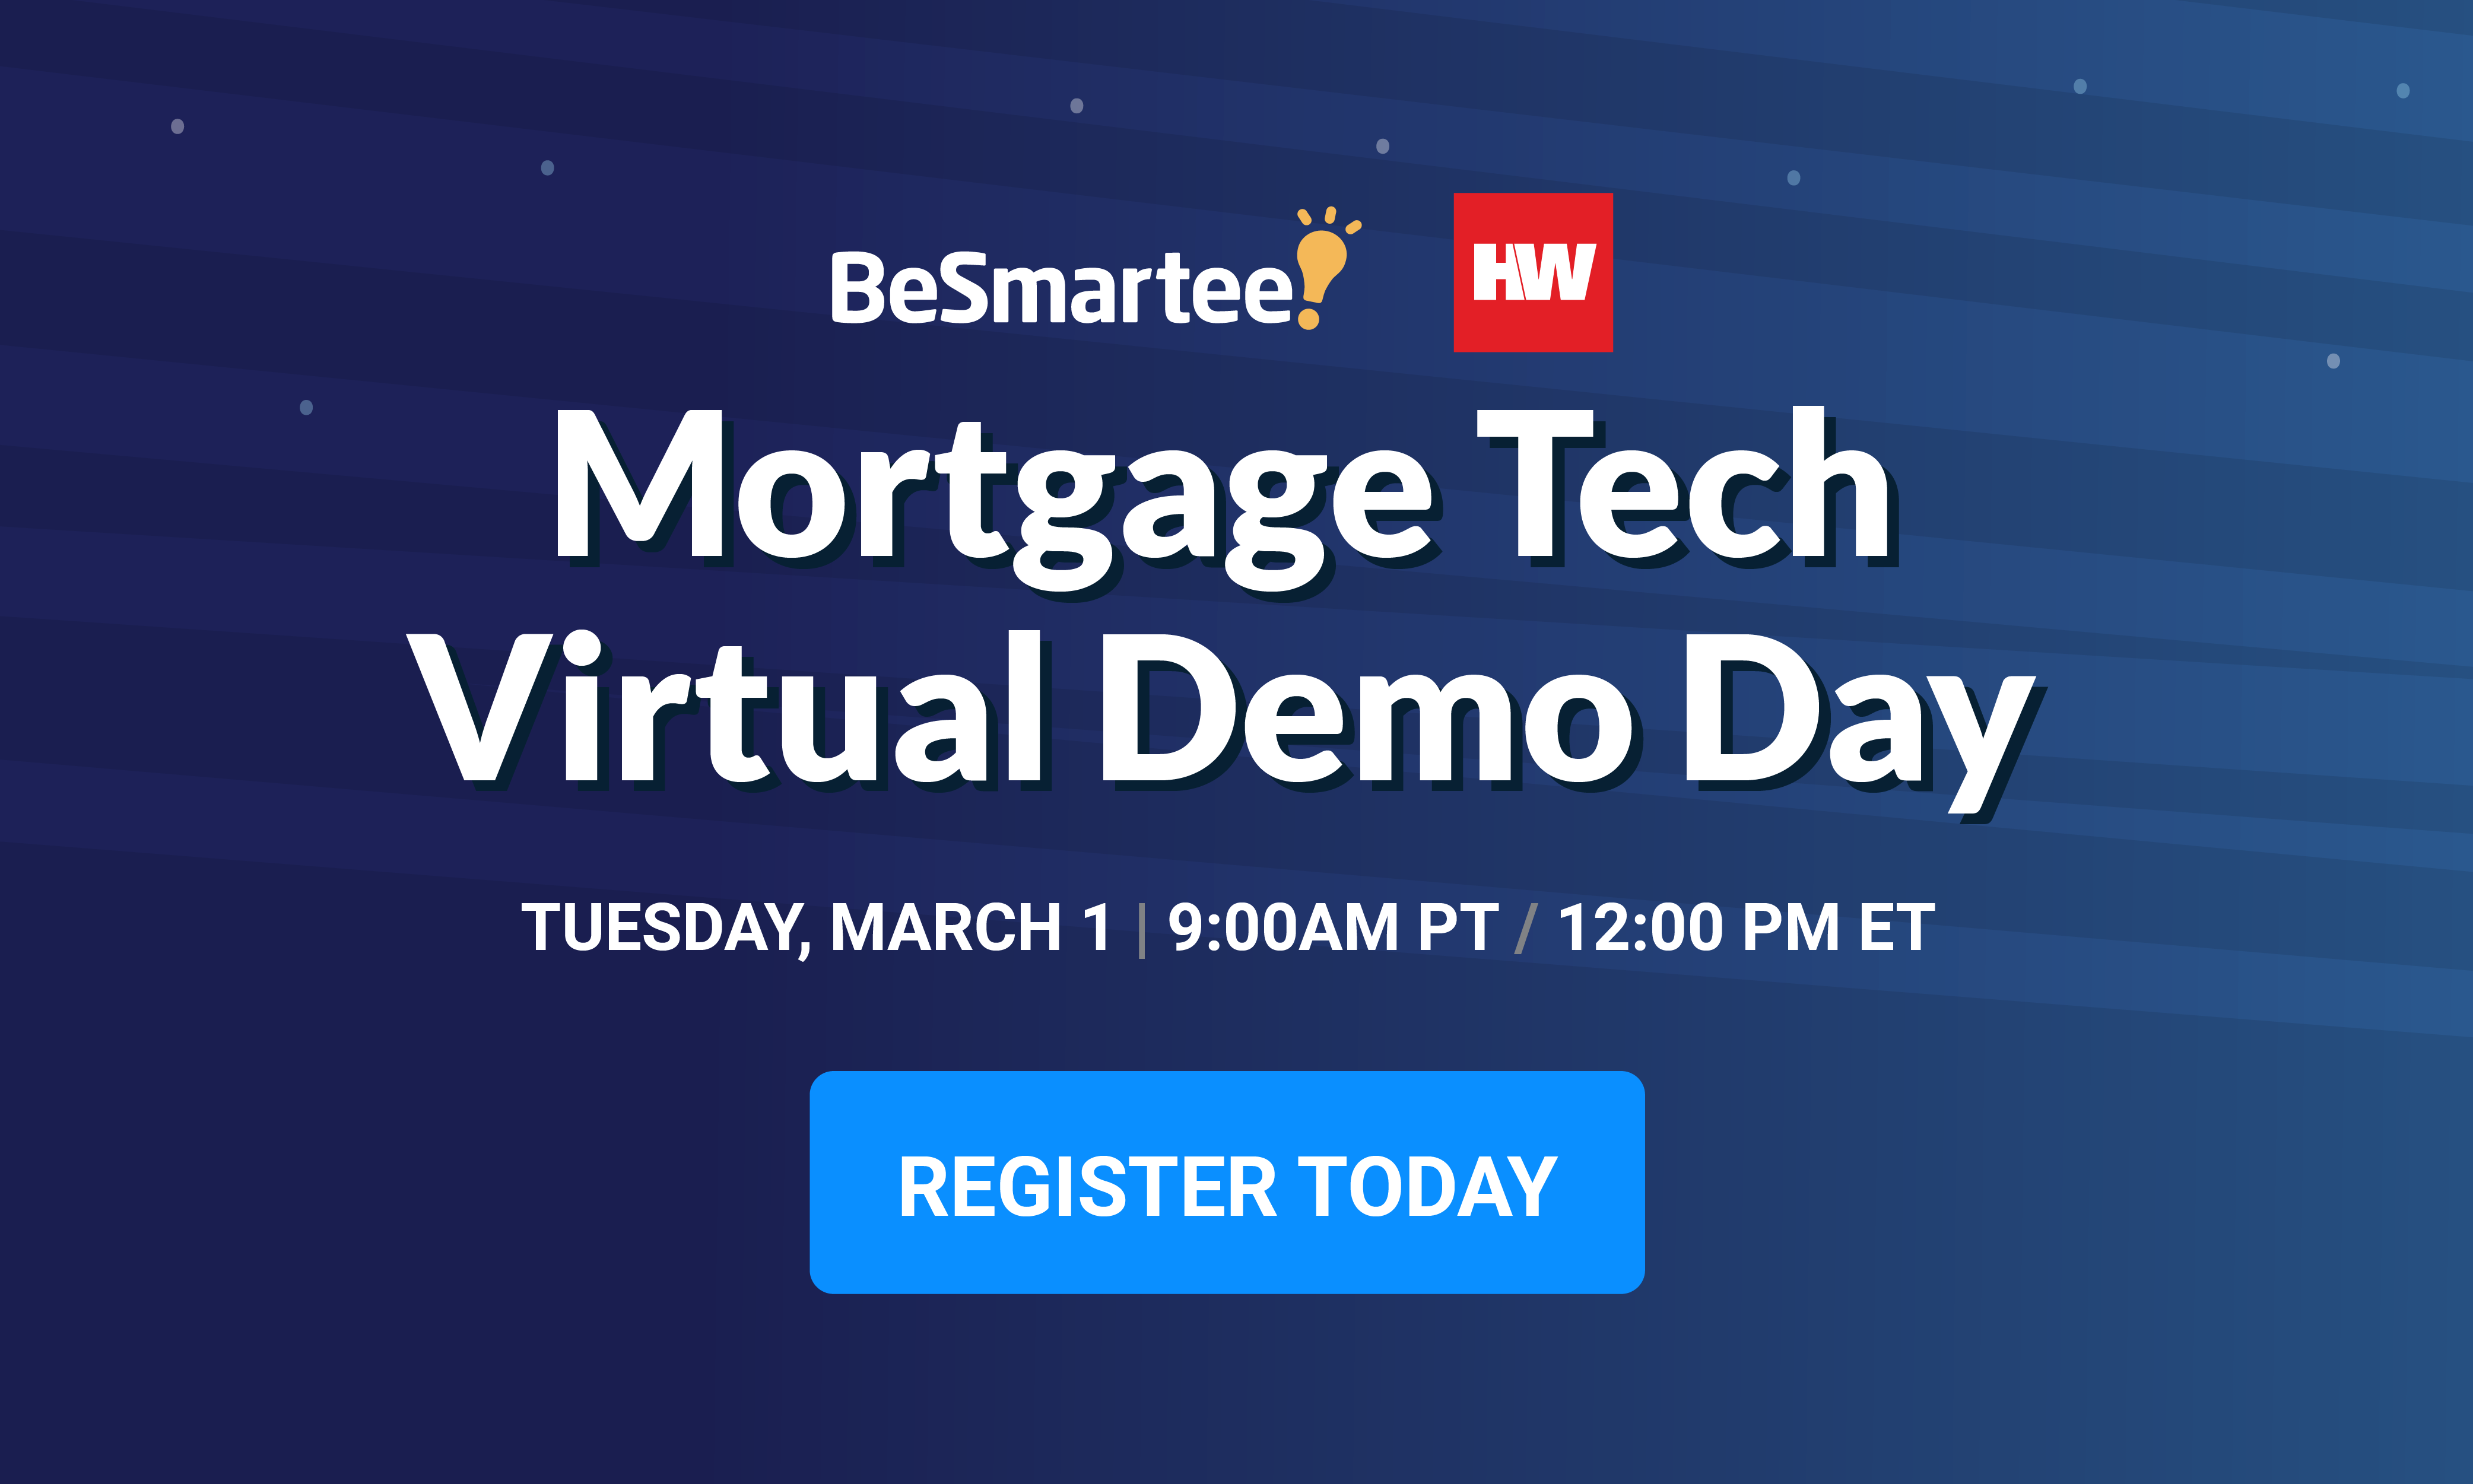 Mortgage Tech Virtual Deme Day BlogSpot